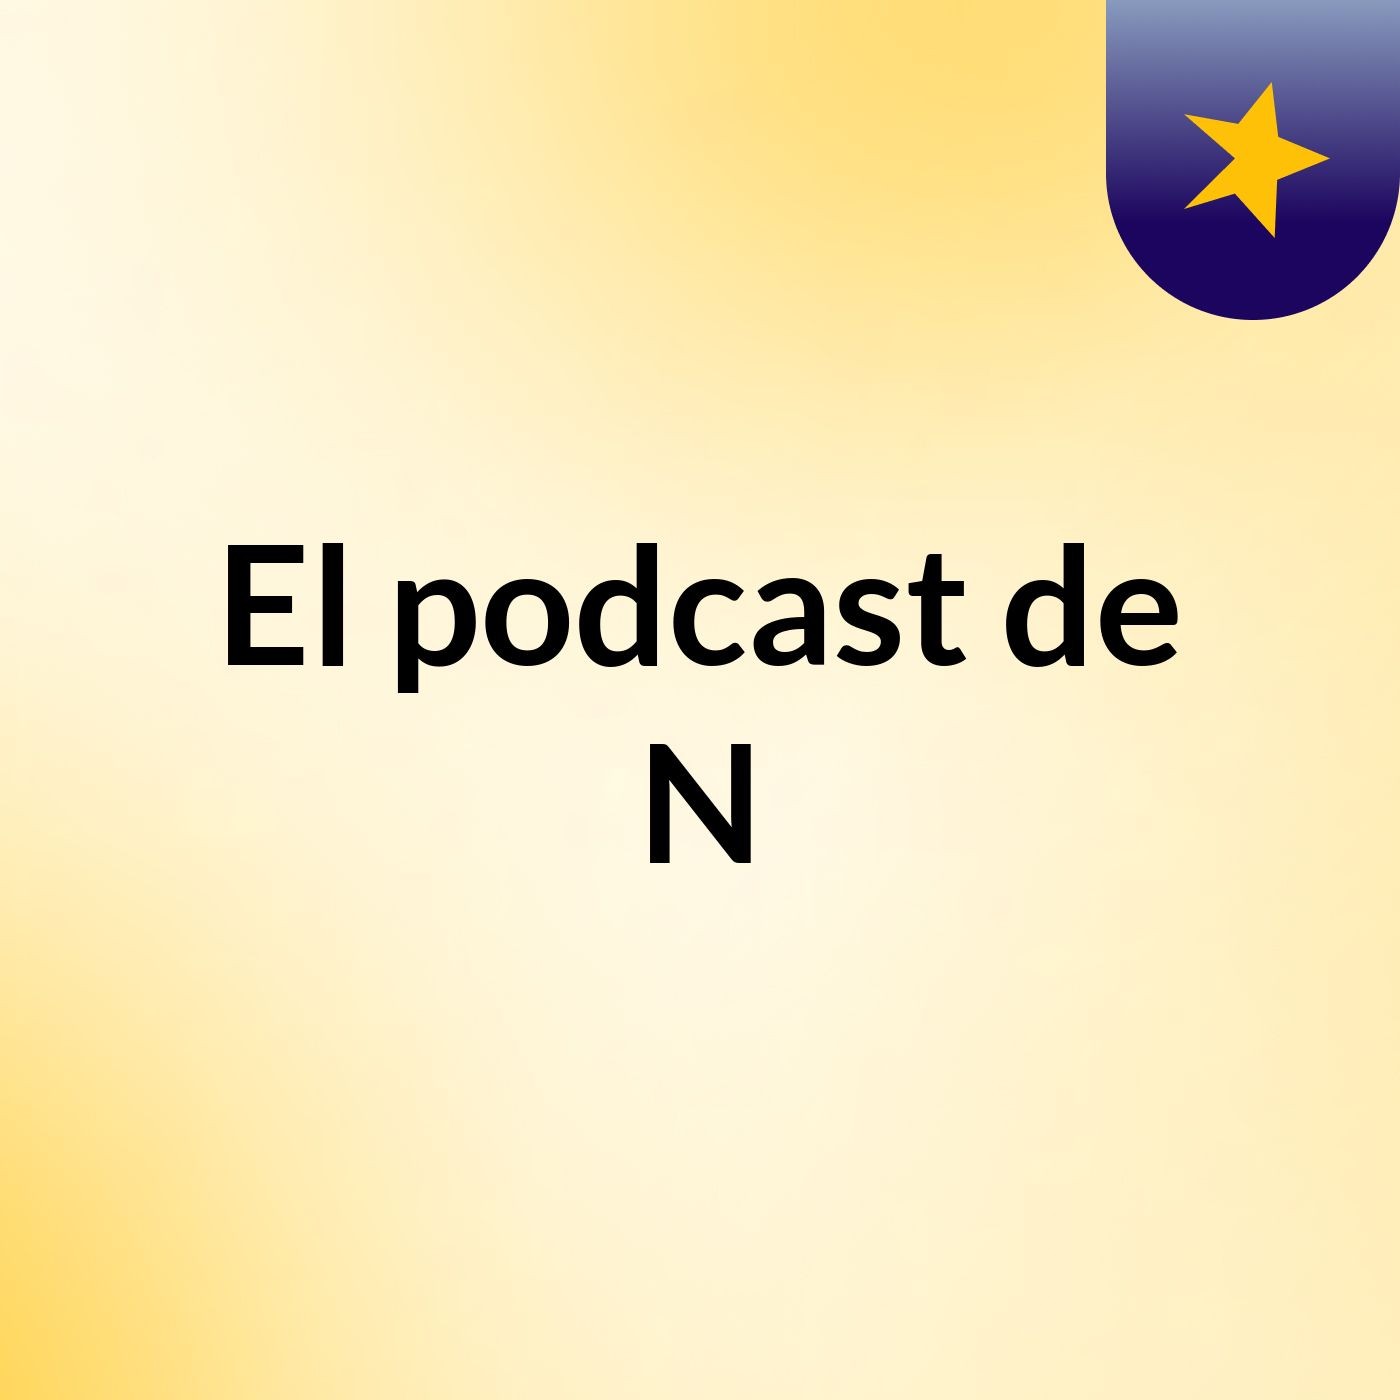 El podcast de N